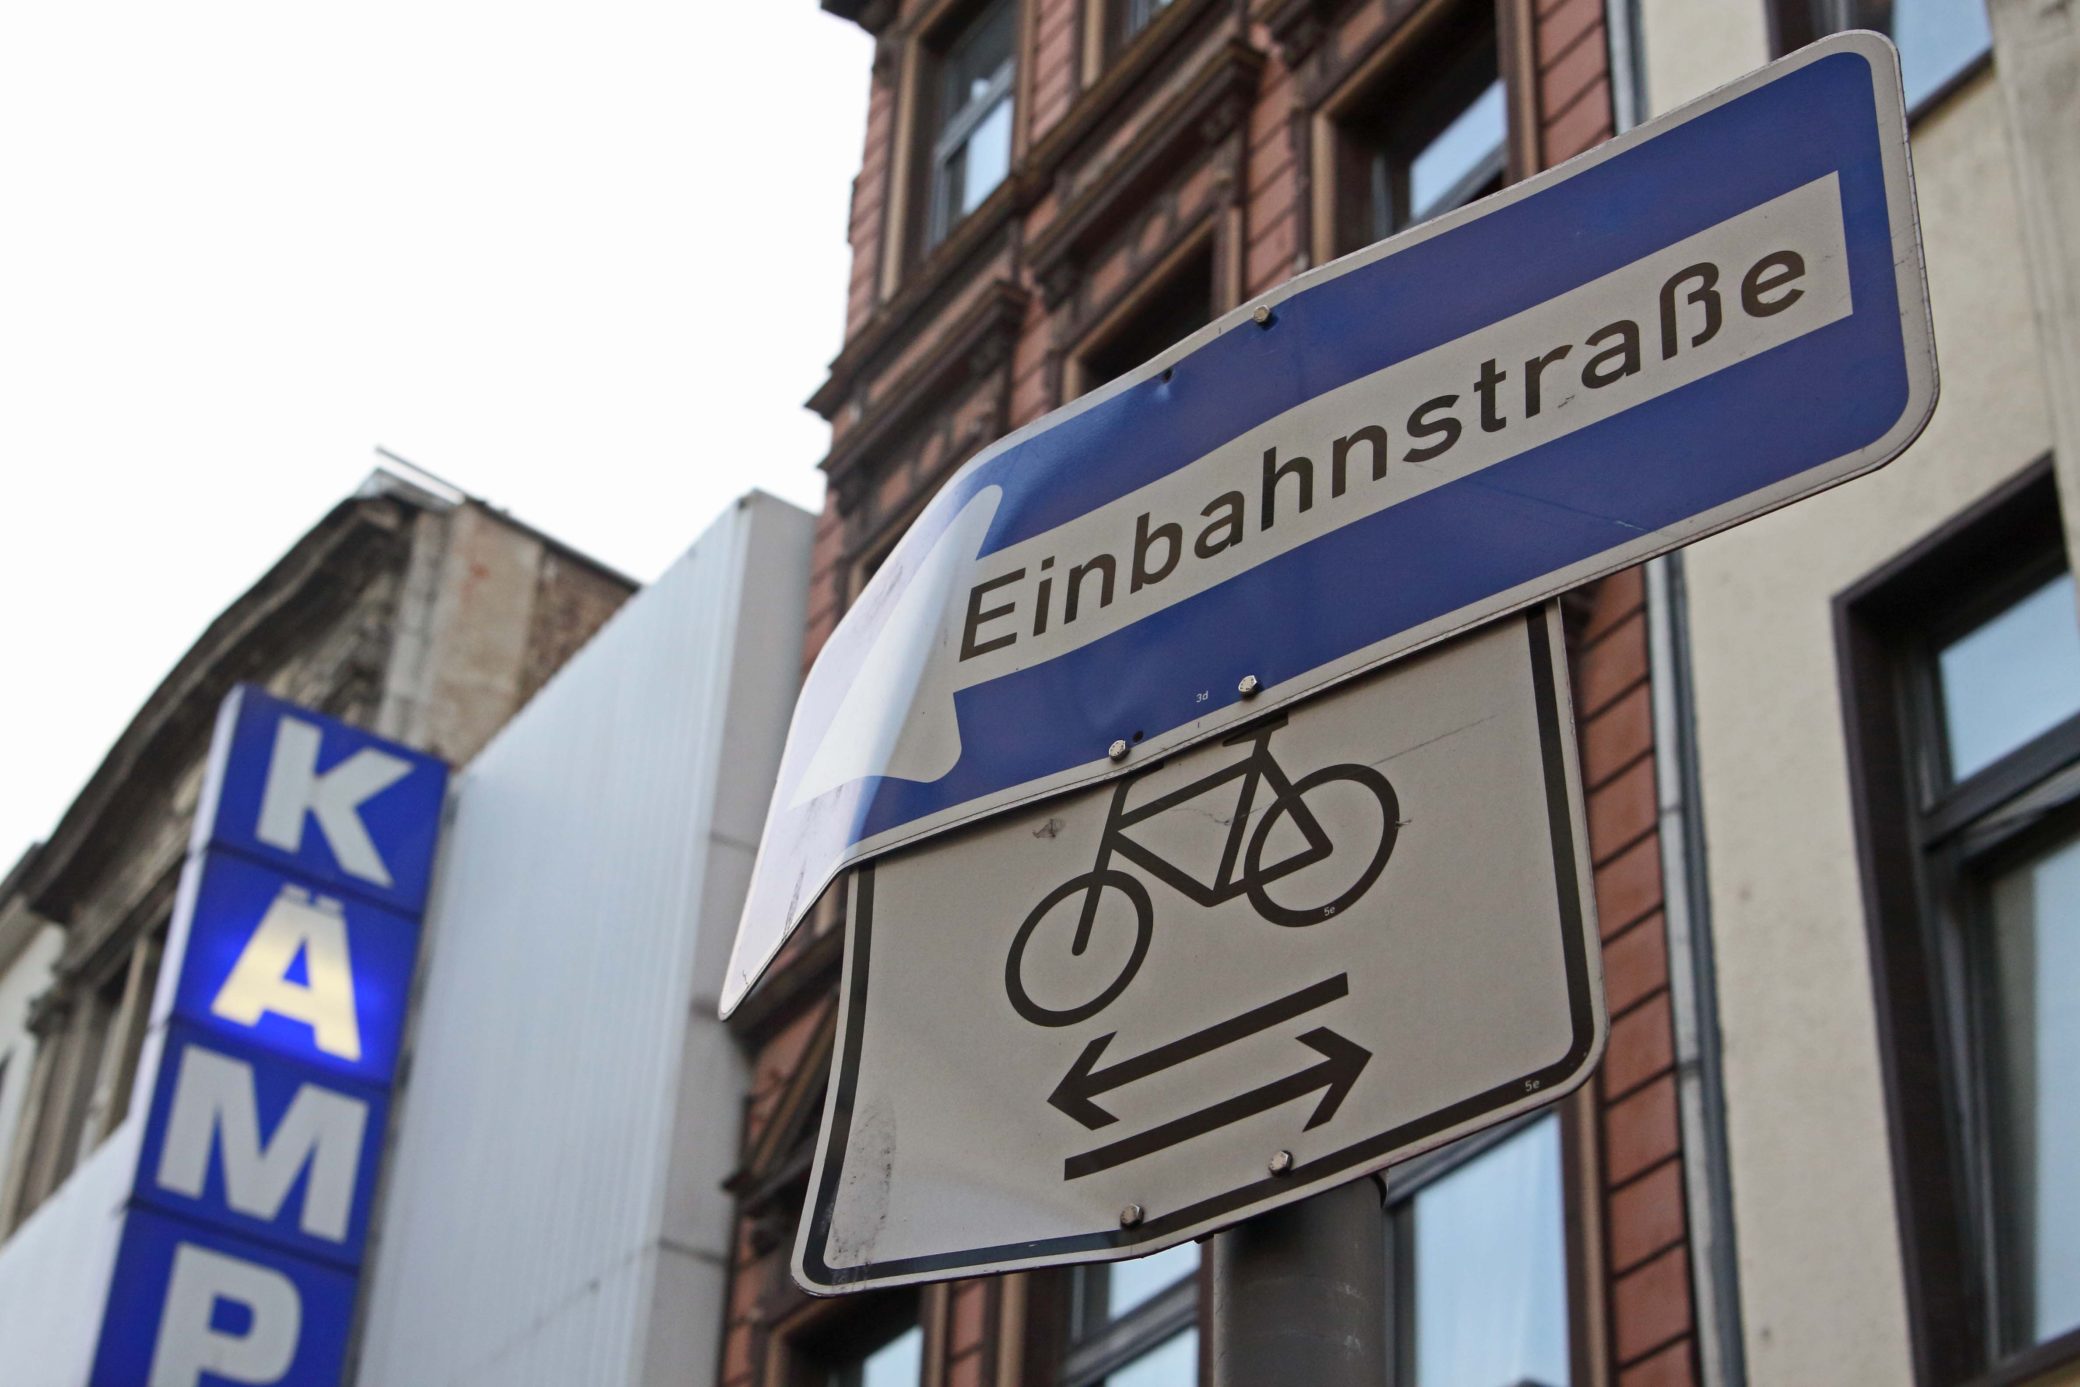 Einbahnstraße, Fahrradverkehr in beiden Richtungen. 